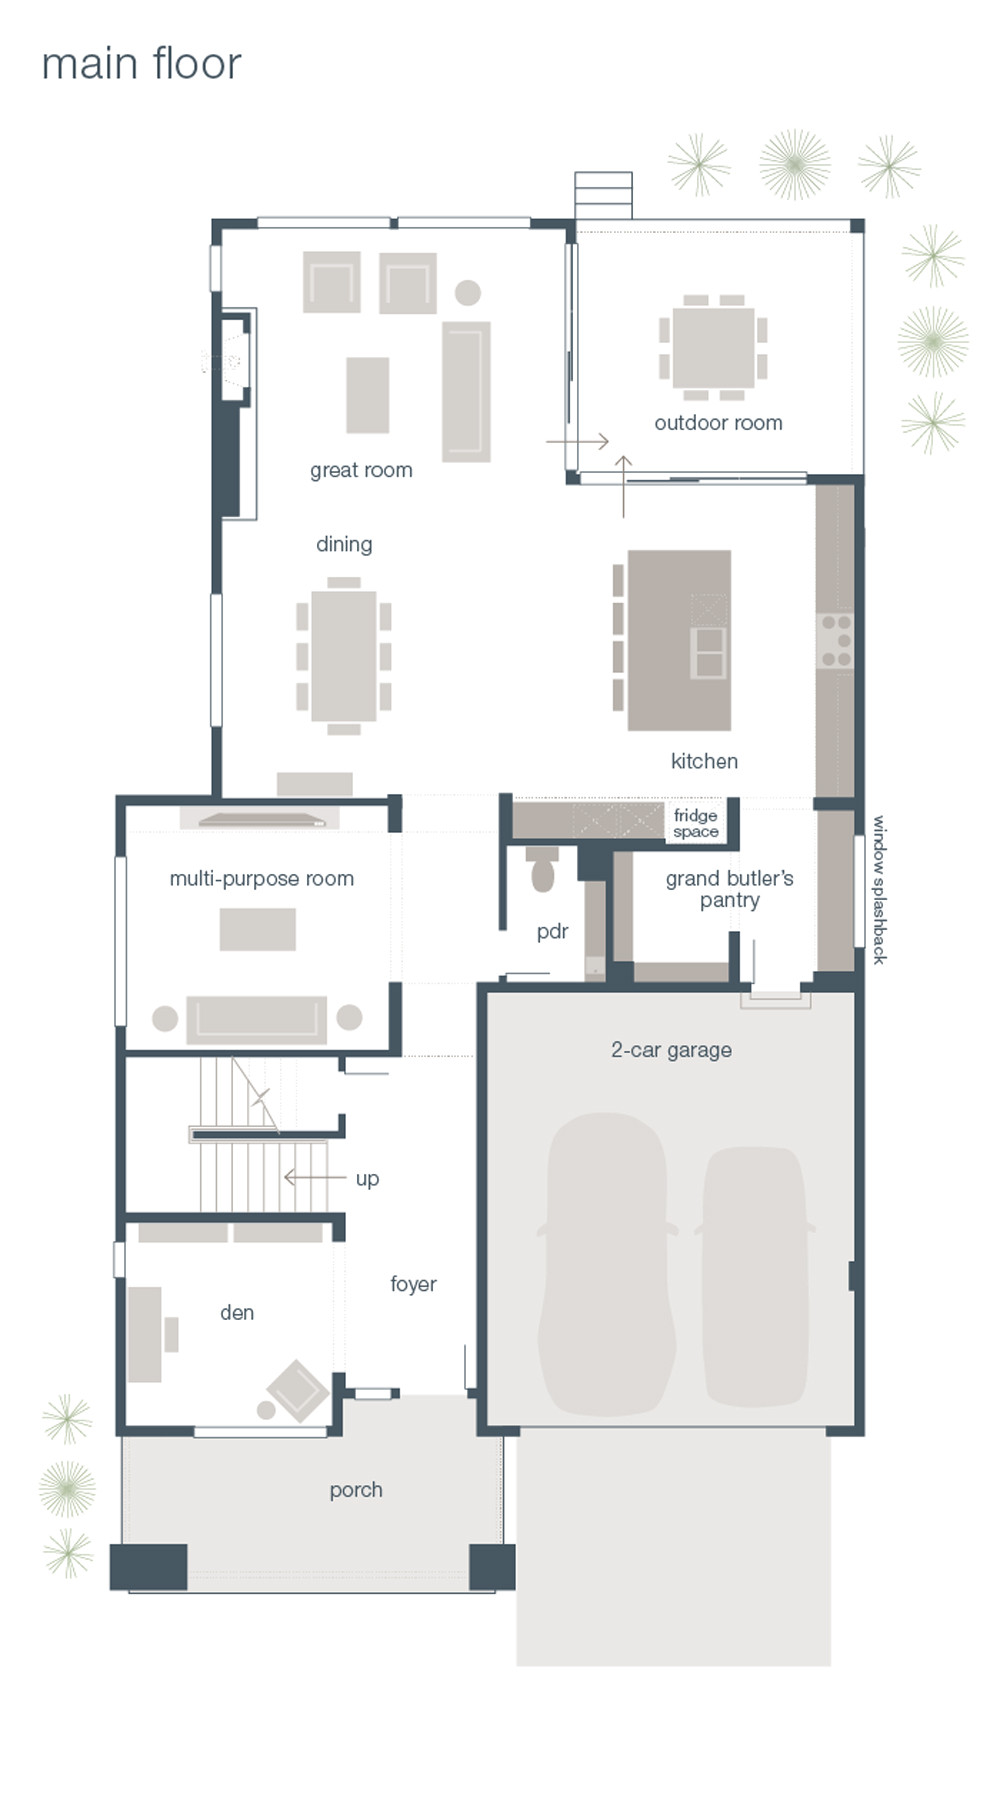 mainvue homes floor plans